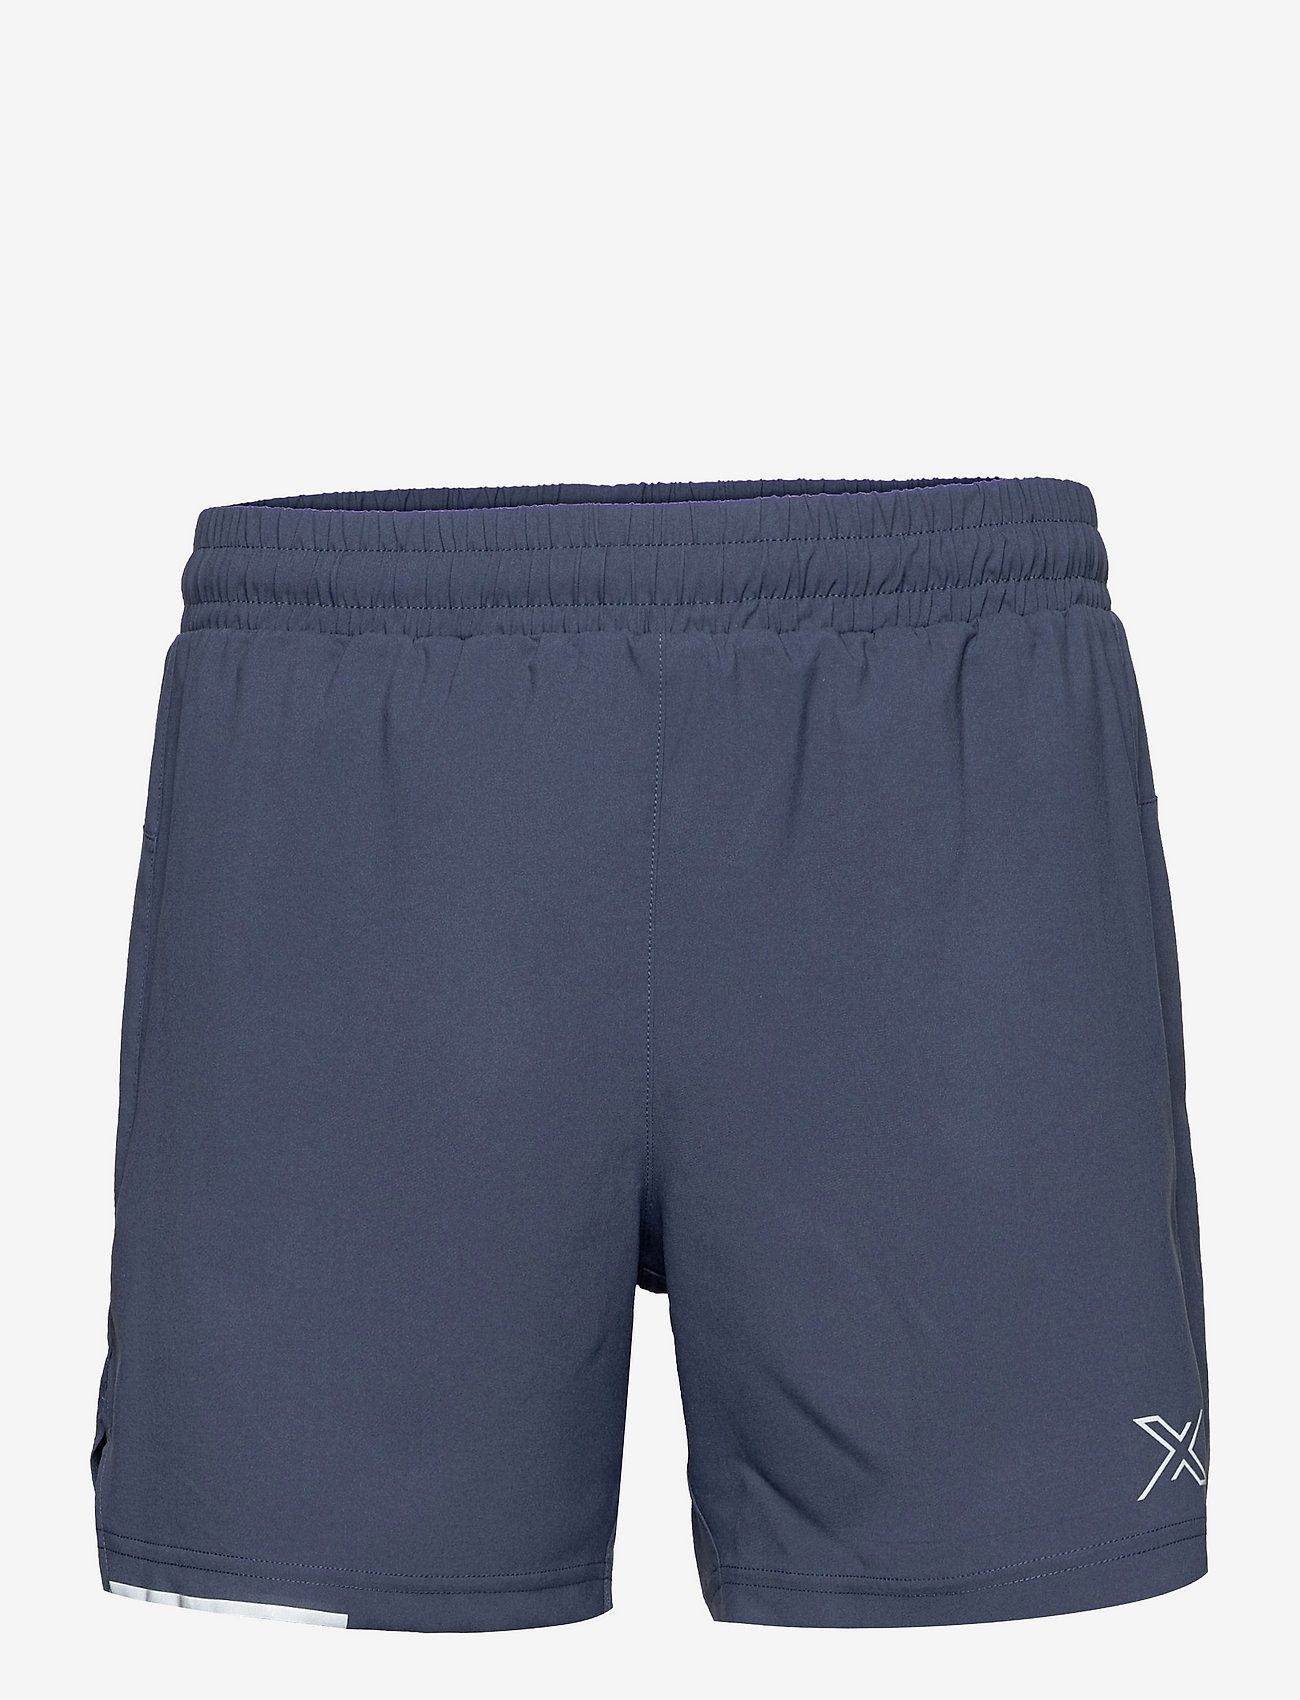 2XU Aero 5 Shorts - Sports | Boozt.com